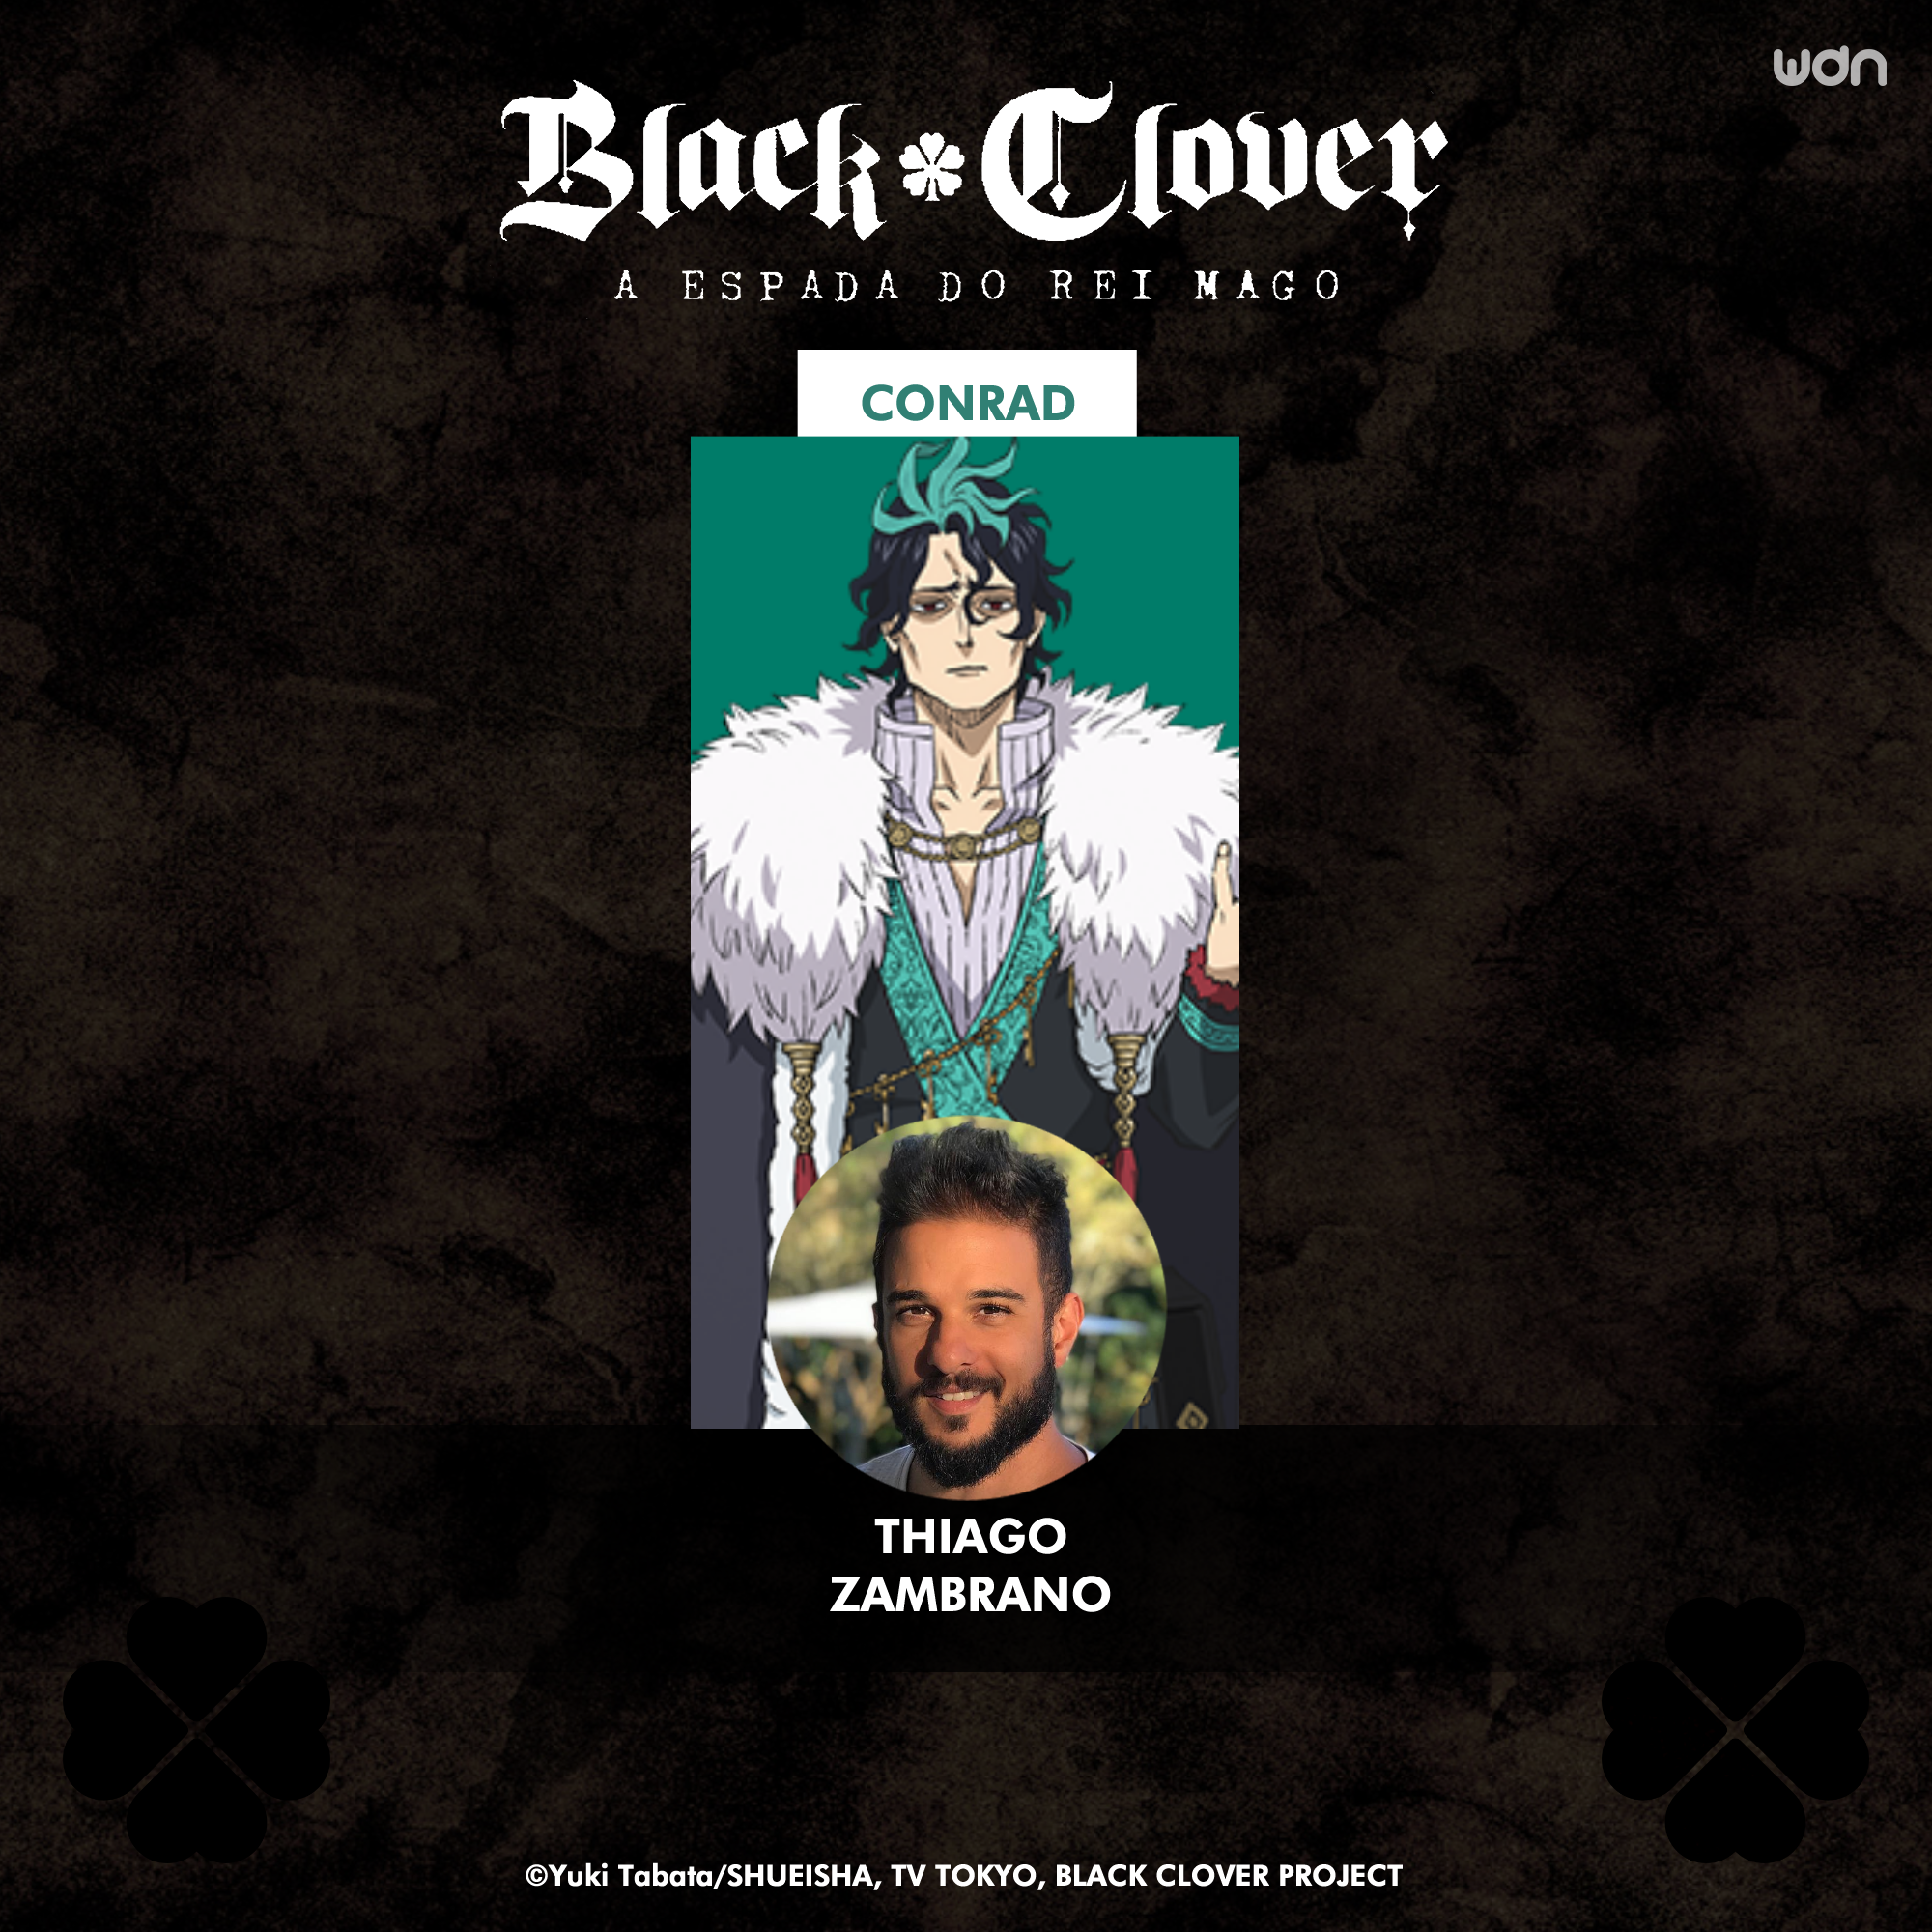 Crunchyroll anuncia dublagem em português para Black Clover e mais